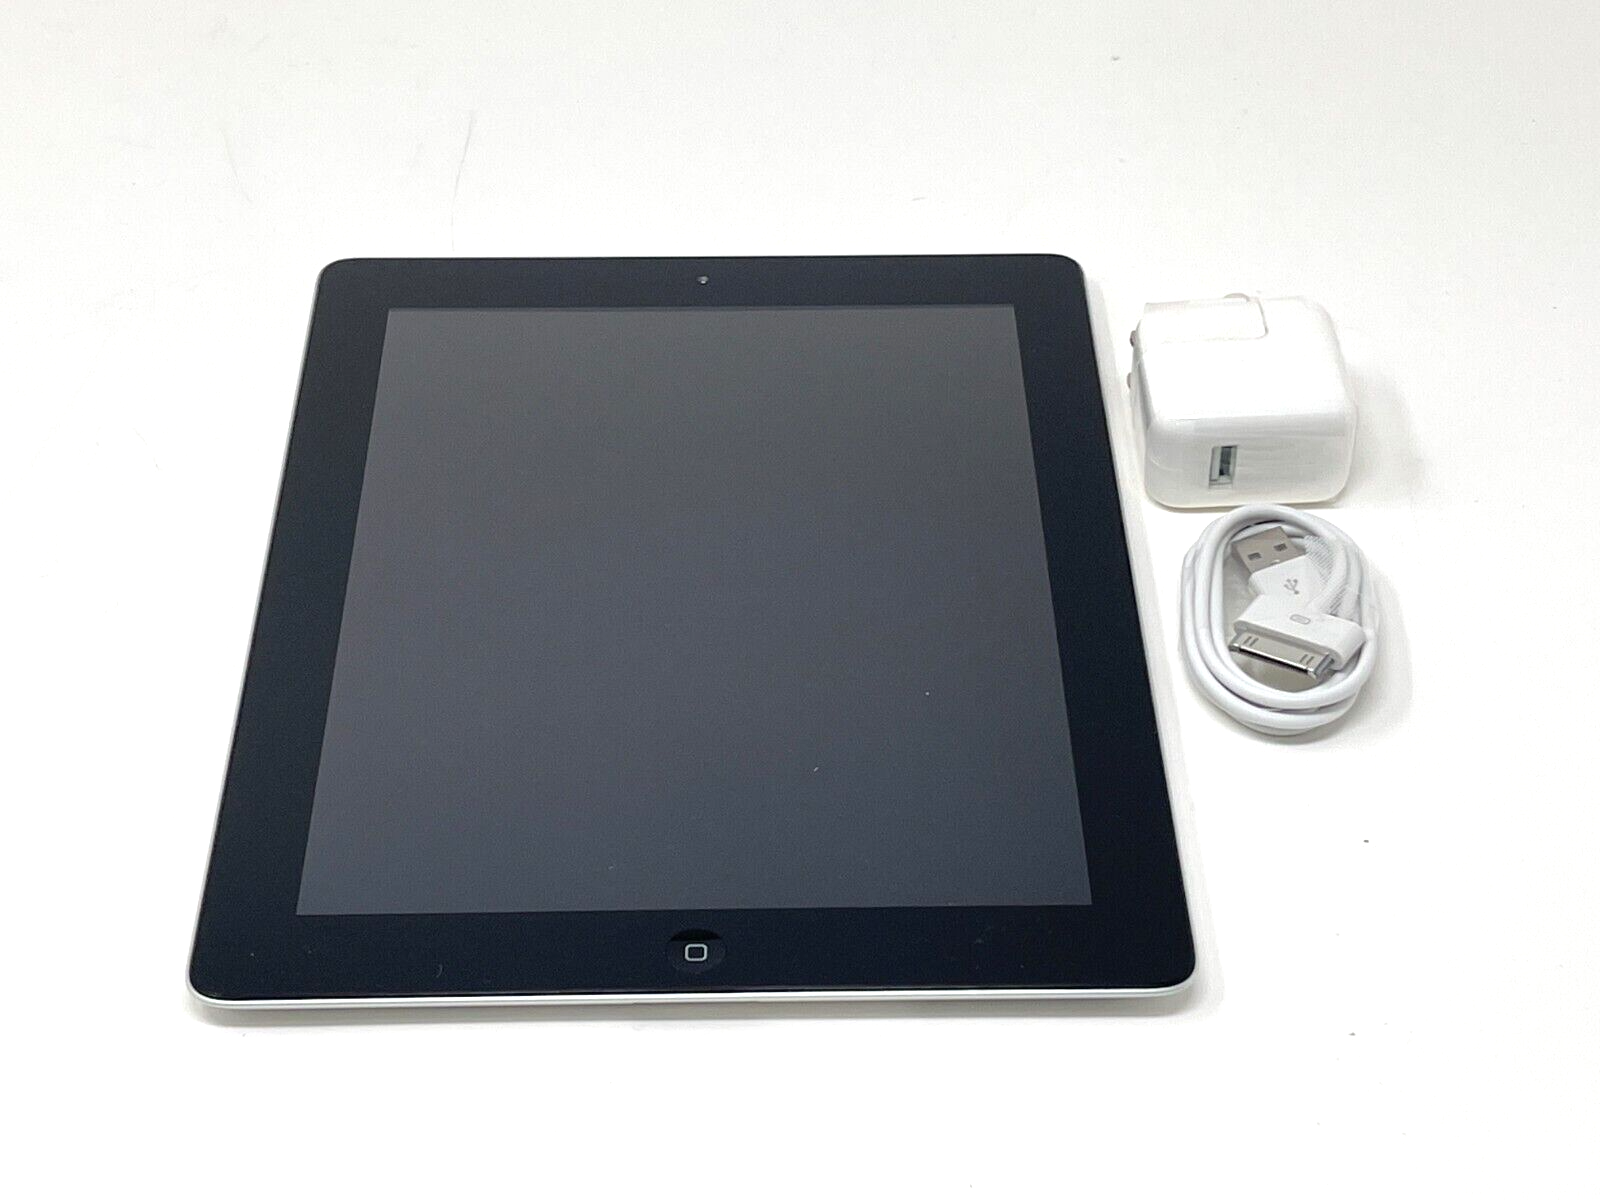 Apple iPad 3rd Gen. 64GB, Wi-Fi, 9.7in - Black for sale online | eBay